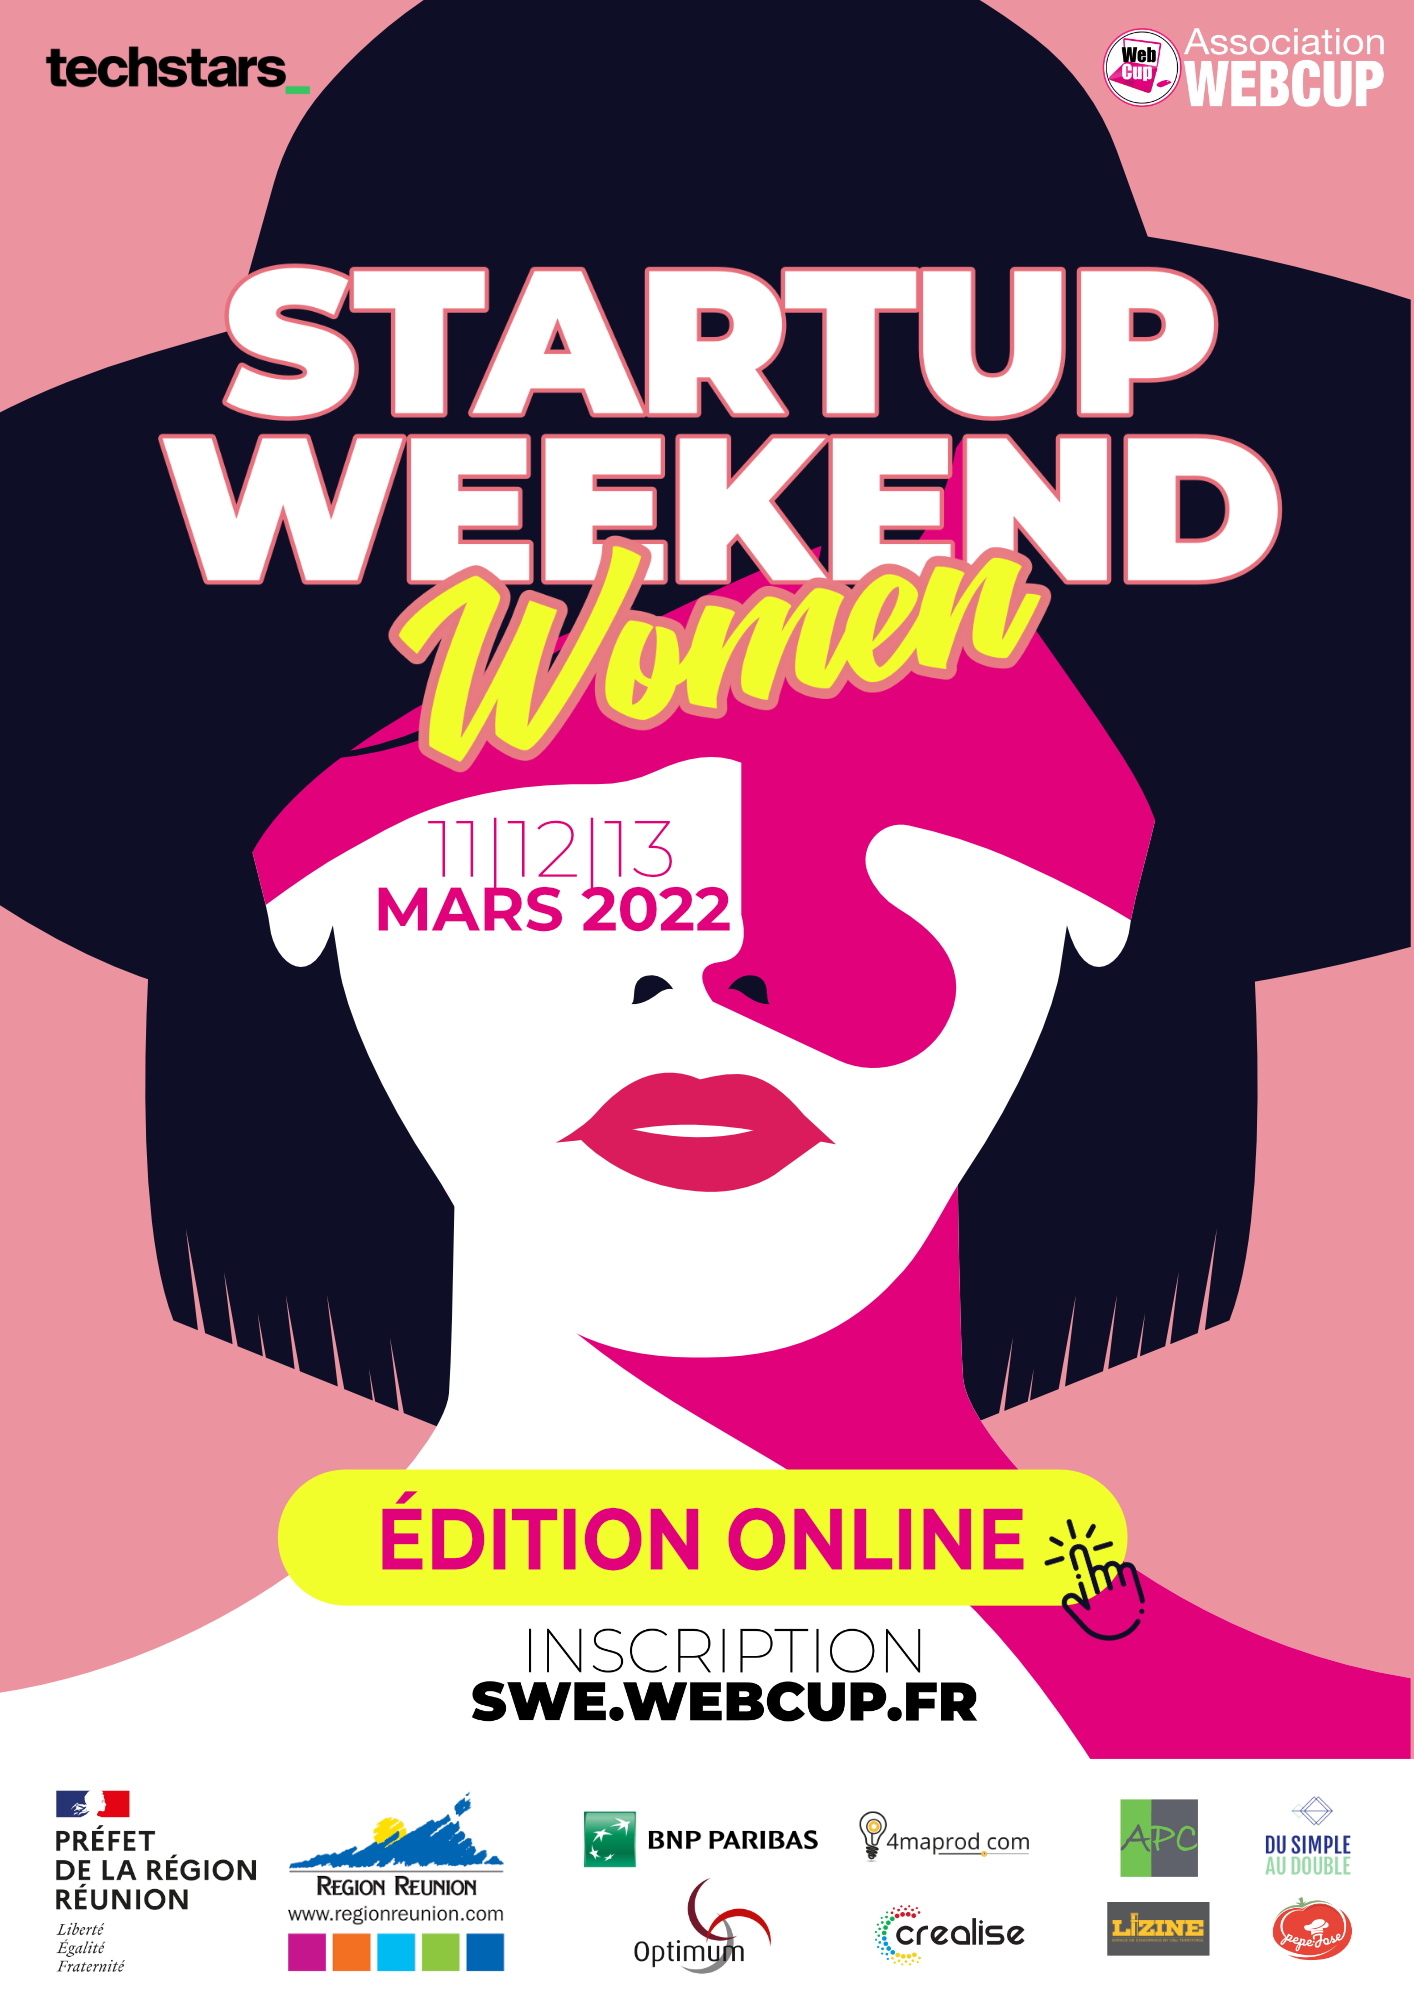 Ouverture des inscriptions de la 3eme édition du Startup weekend édition Women les 11,12 et 13 mars